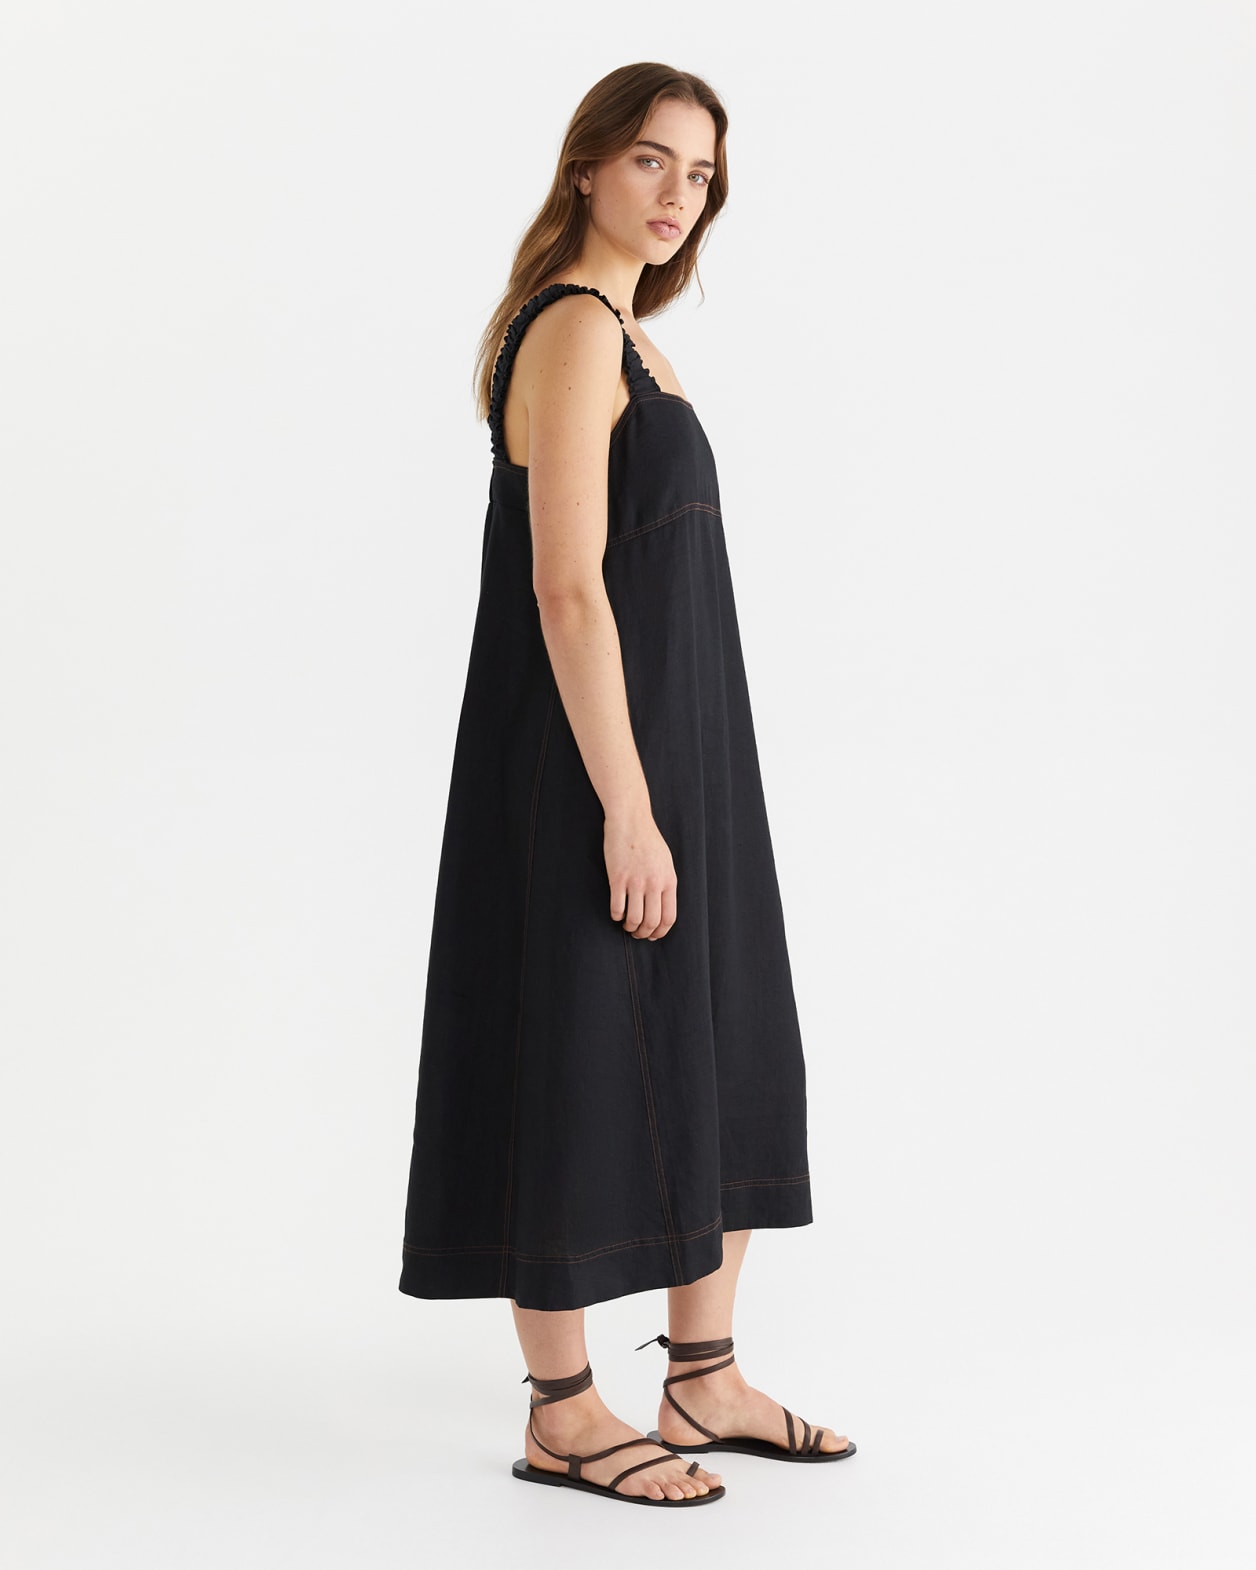 Kiki Elastic Strap Dress in BLACK